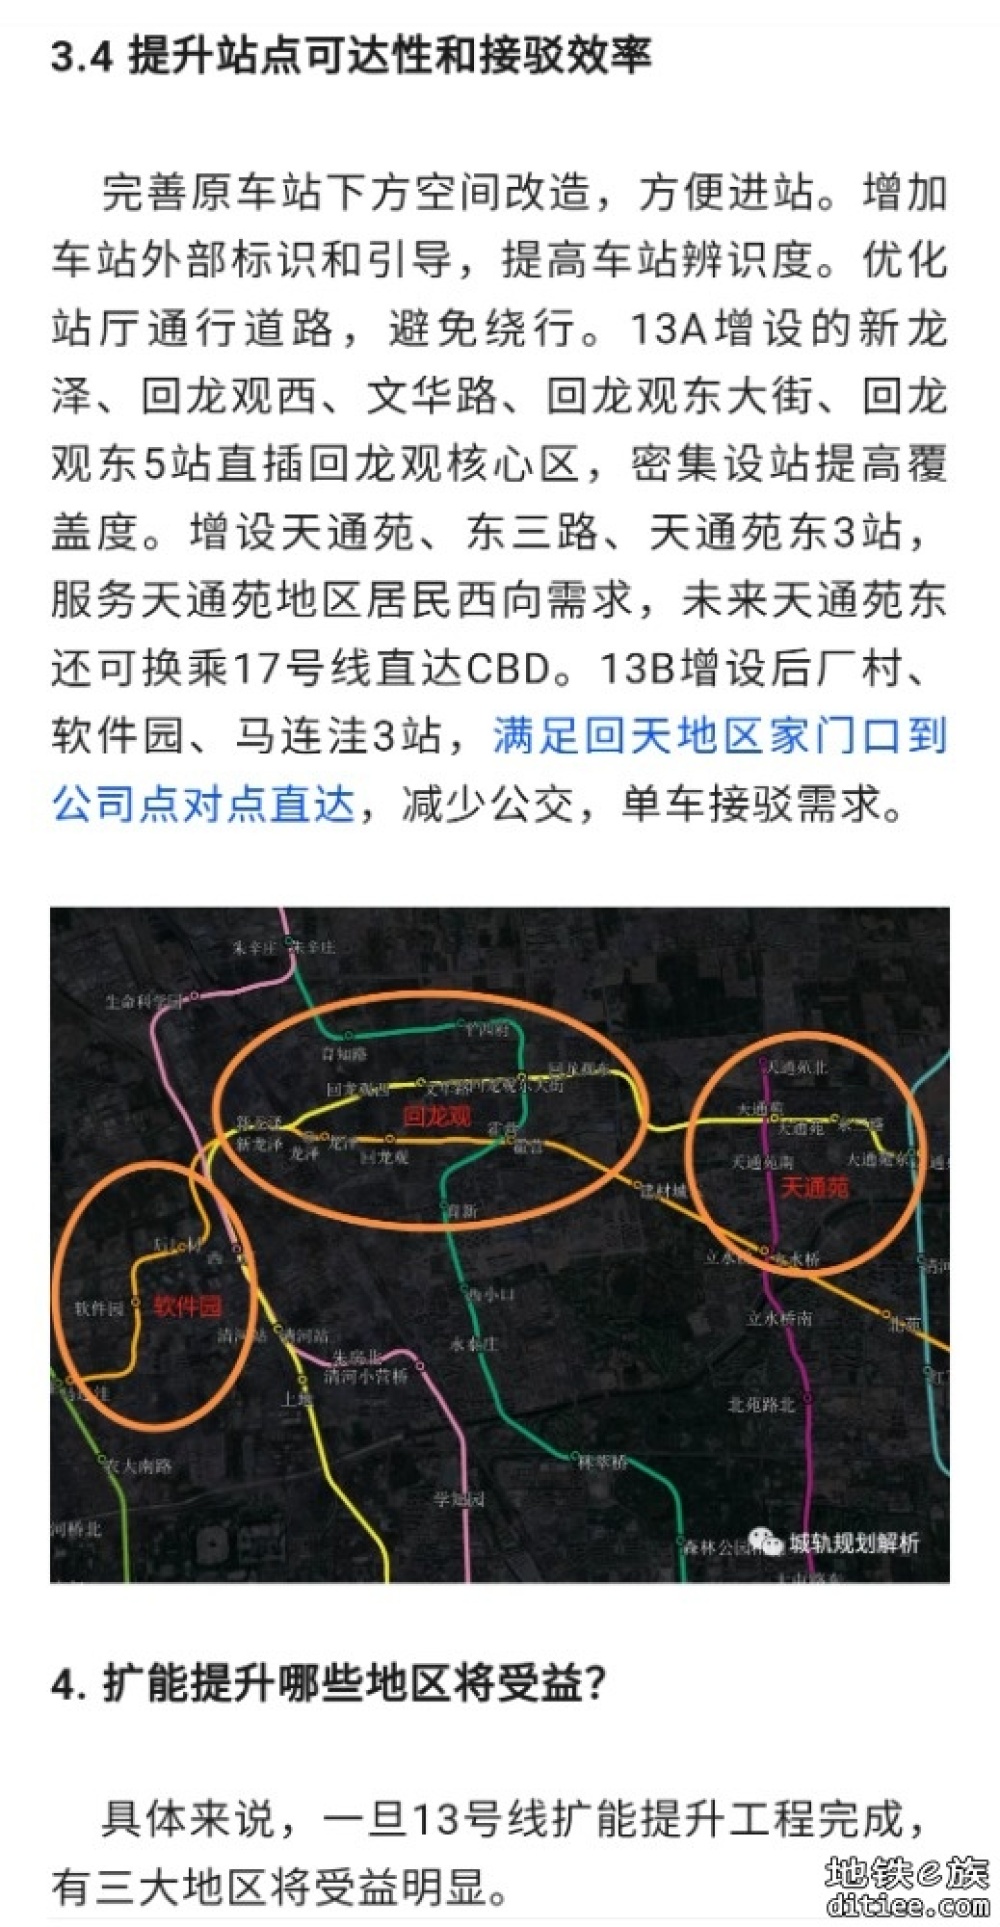 北京地铁13号线扩能提升：破解北京北部交通难题，畅通出行之路